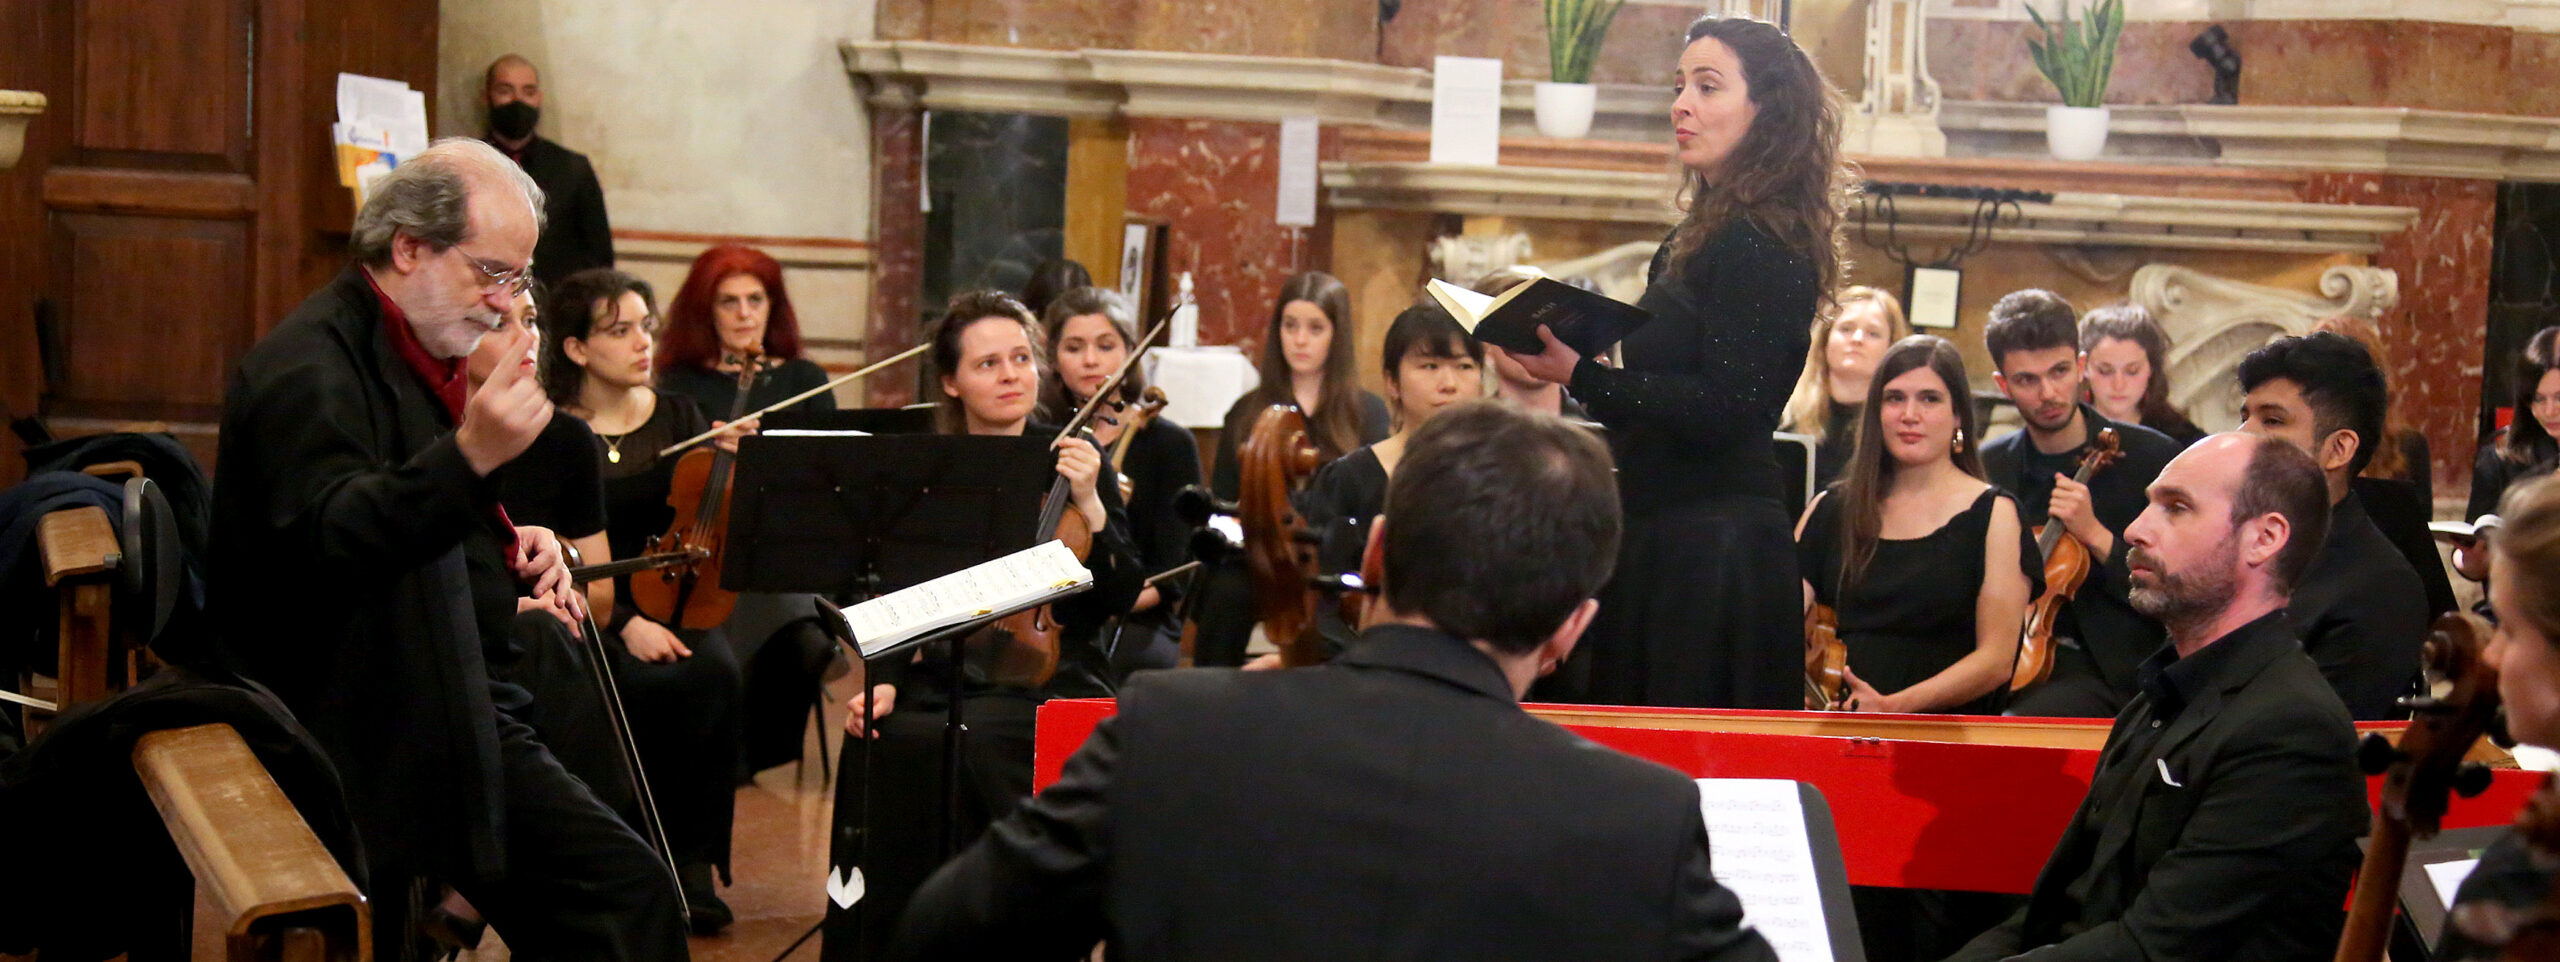 Bach, il testamento spirituale-artistico risuona in Duomo. Giovedì la Messa in Si minore con l’orchestra Frau Musika